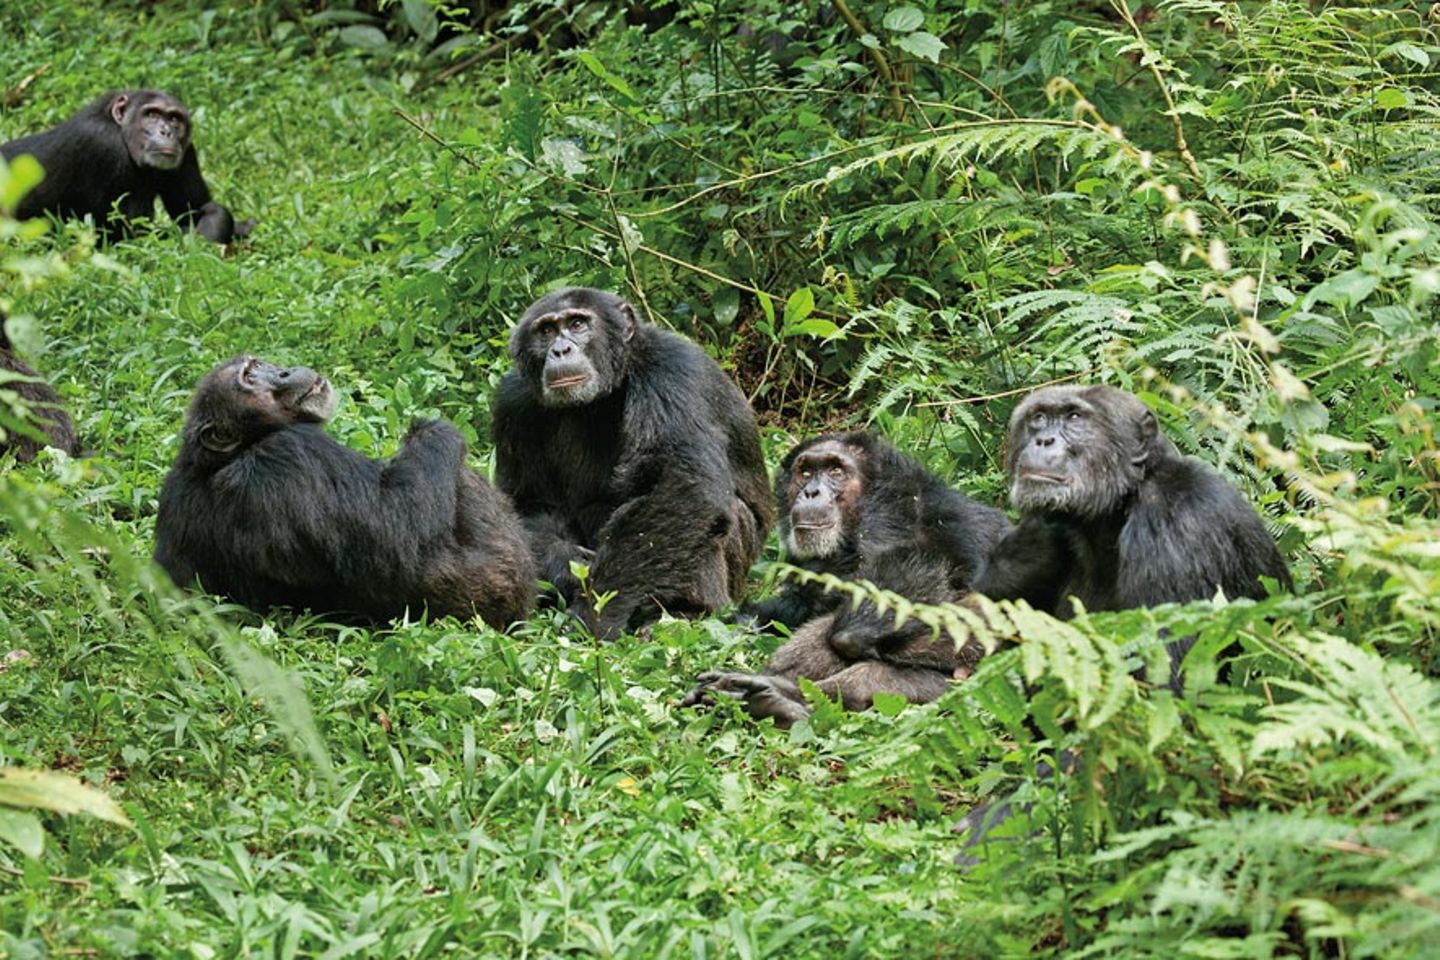 INTERVIEW: Kinostart: "Schimpansen" - Bild 11